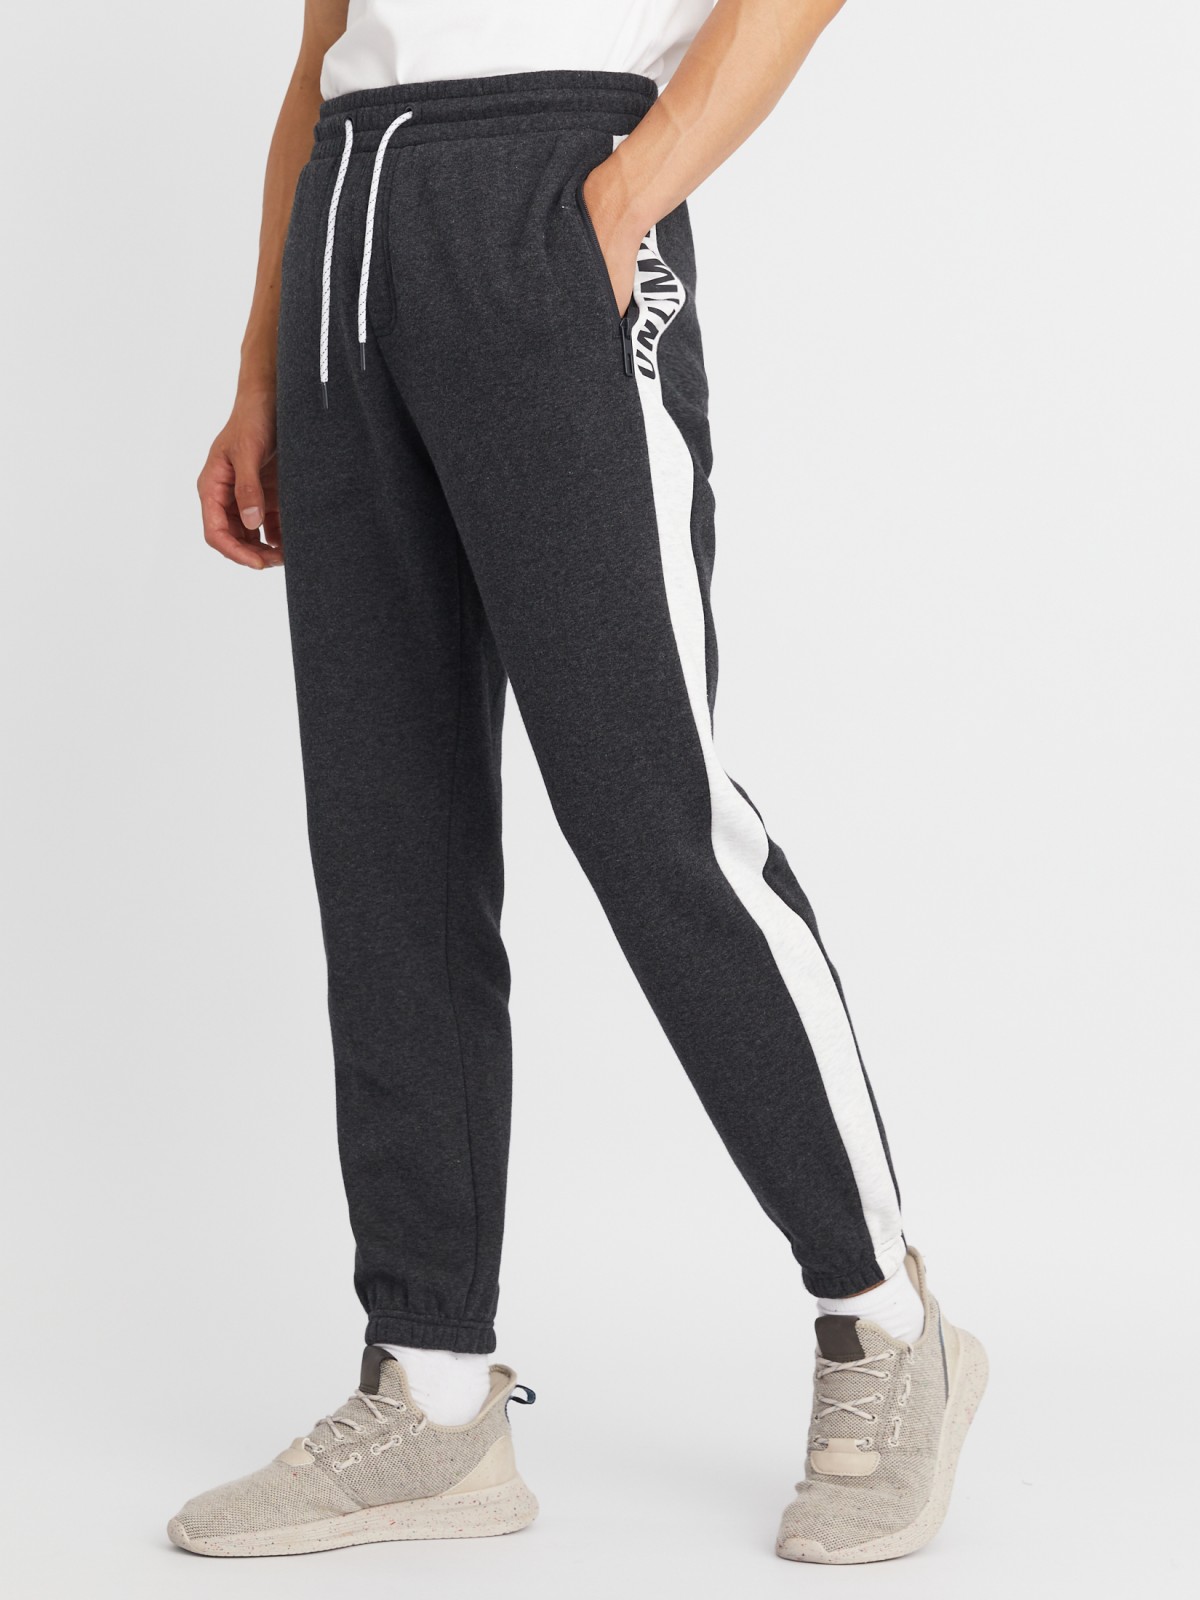 Утеплённые трикотажные брюки-джоггеры в спортивном стиле с лампасами zolla 213337660013, цвет темно-серый, размер M - фото 3